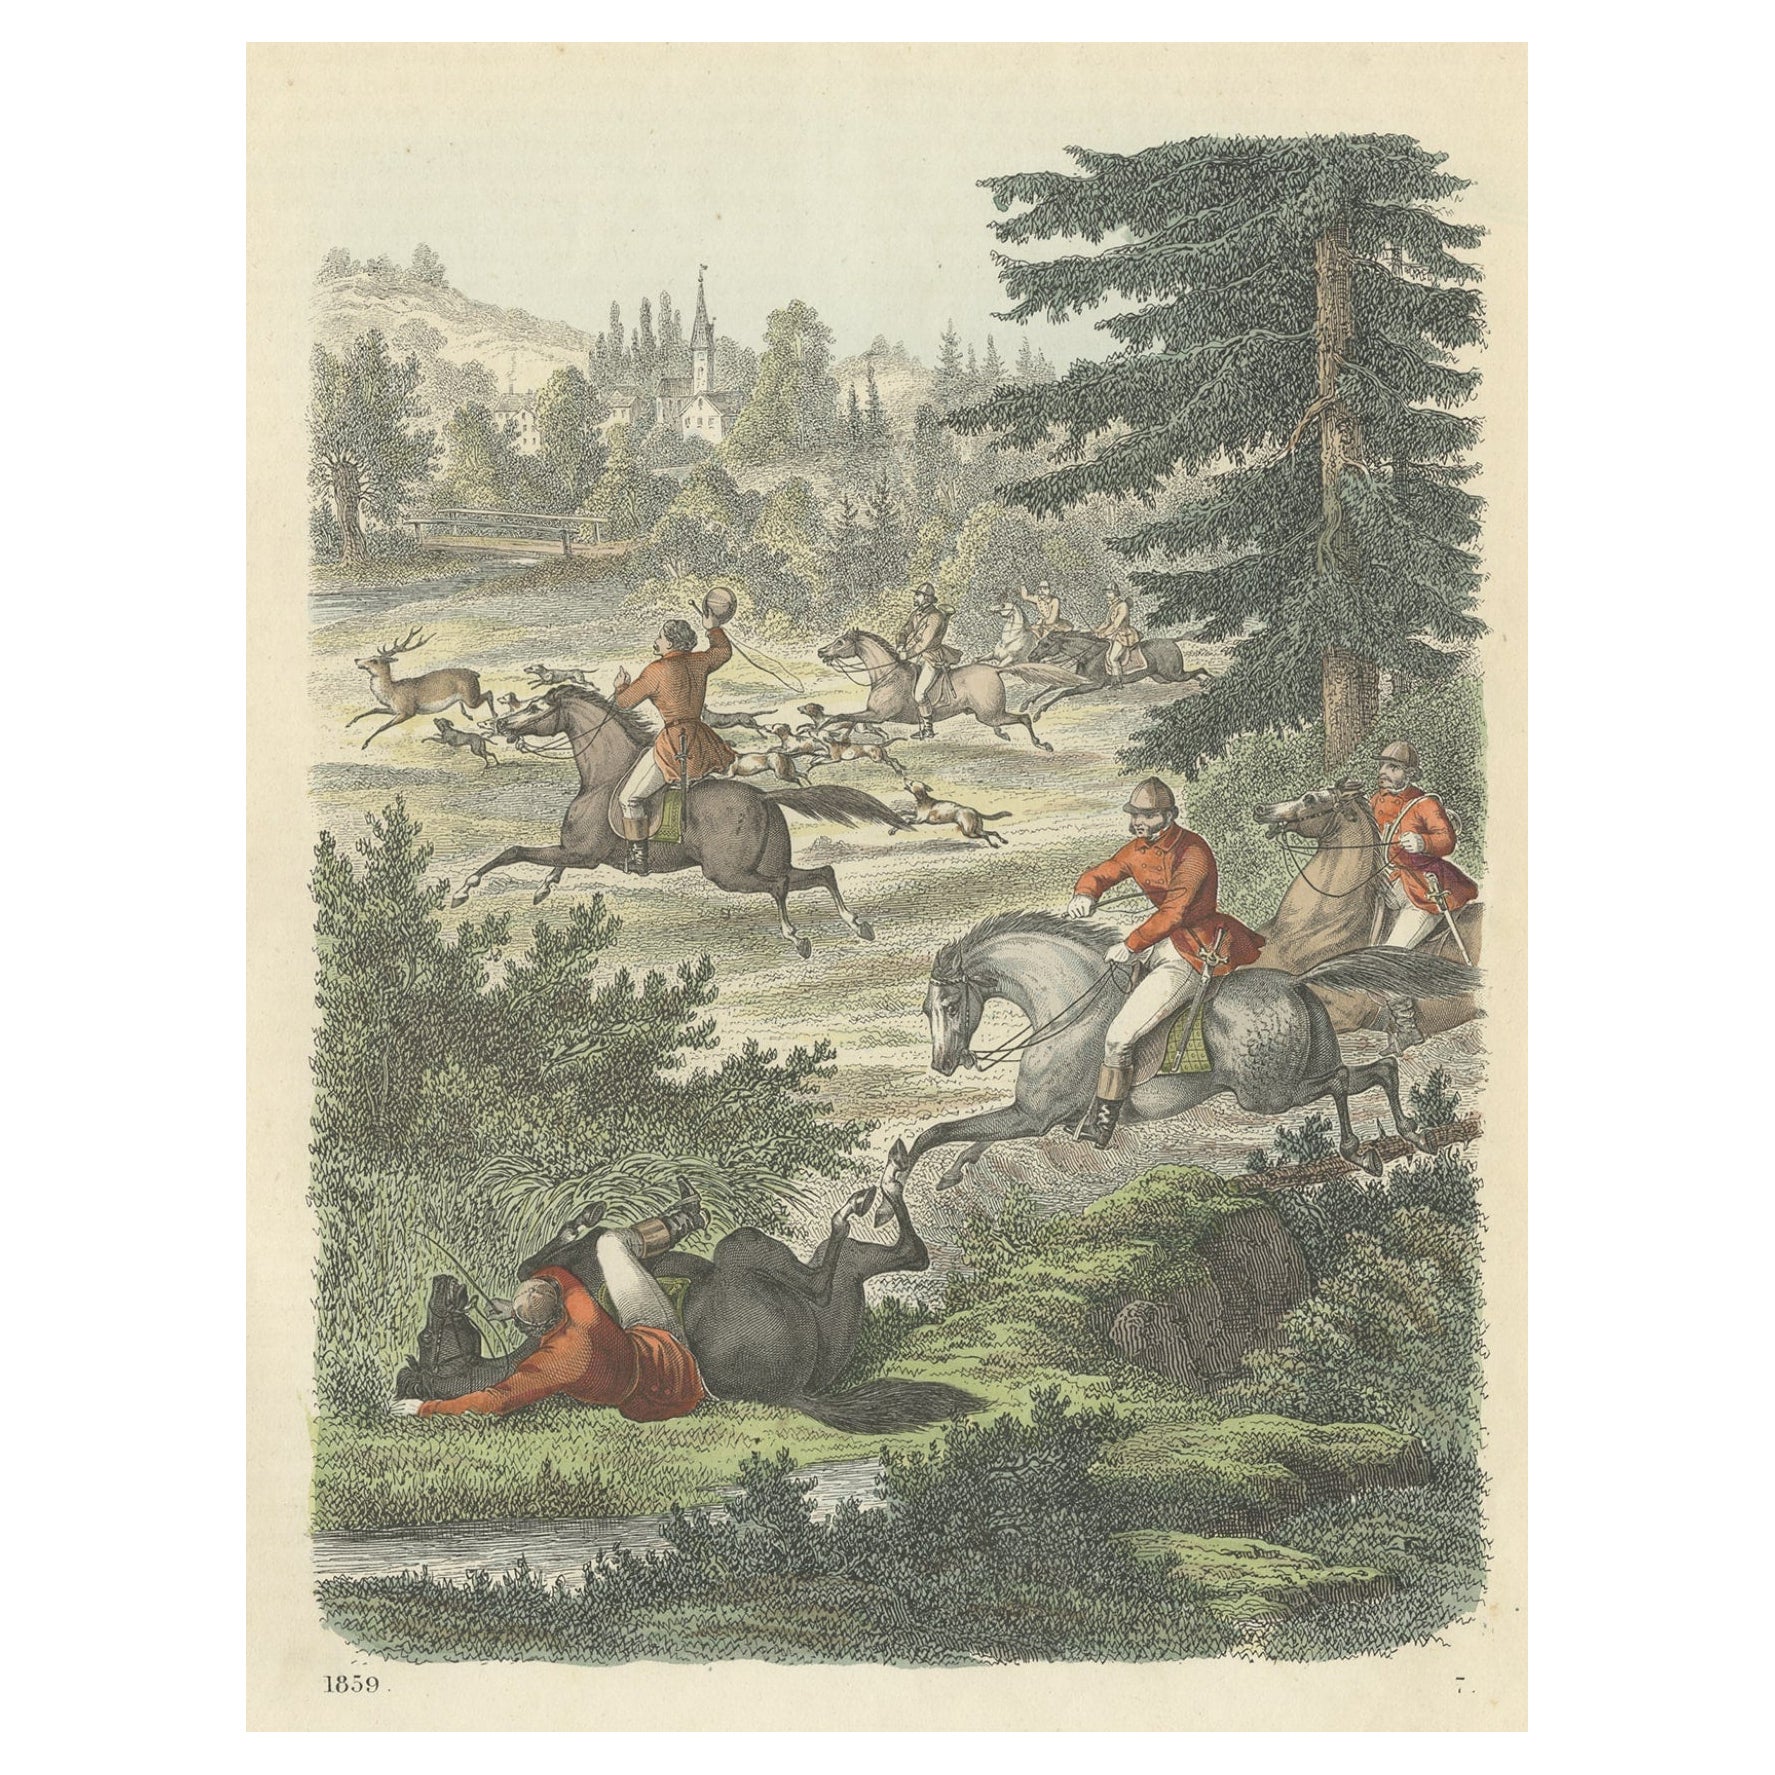 Antique Print of a Deer Hunt on Horse, 1859